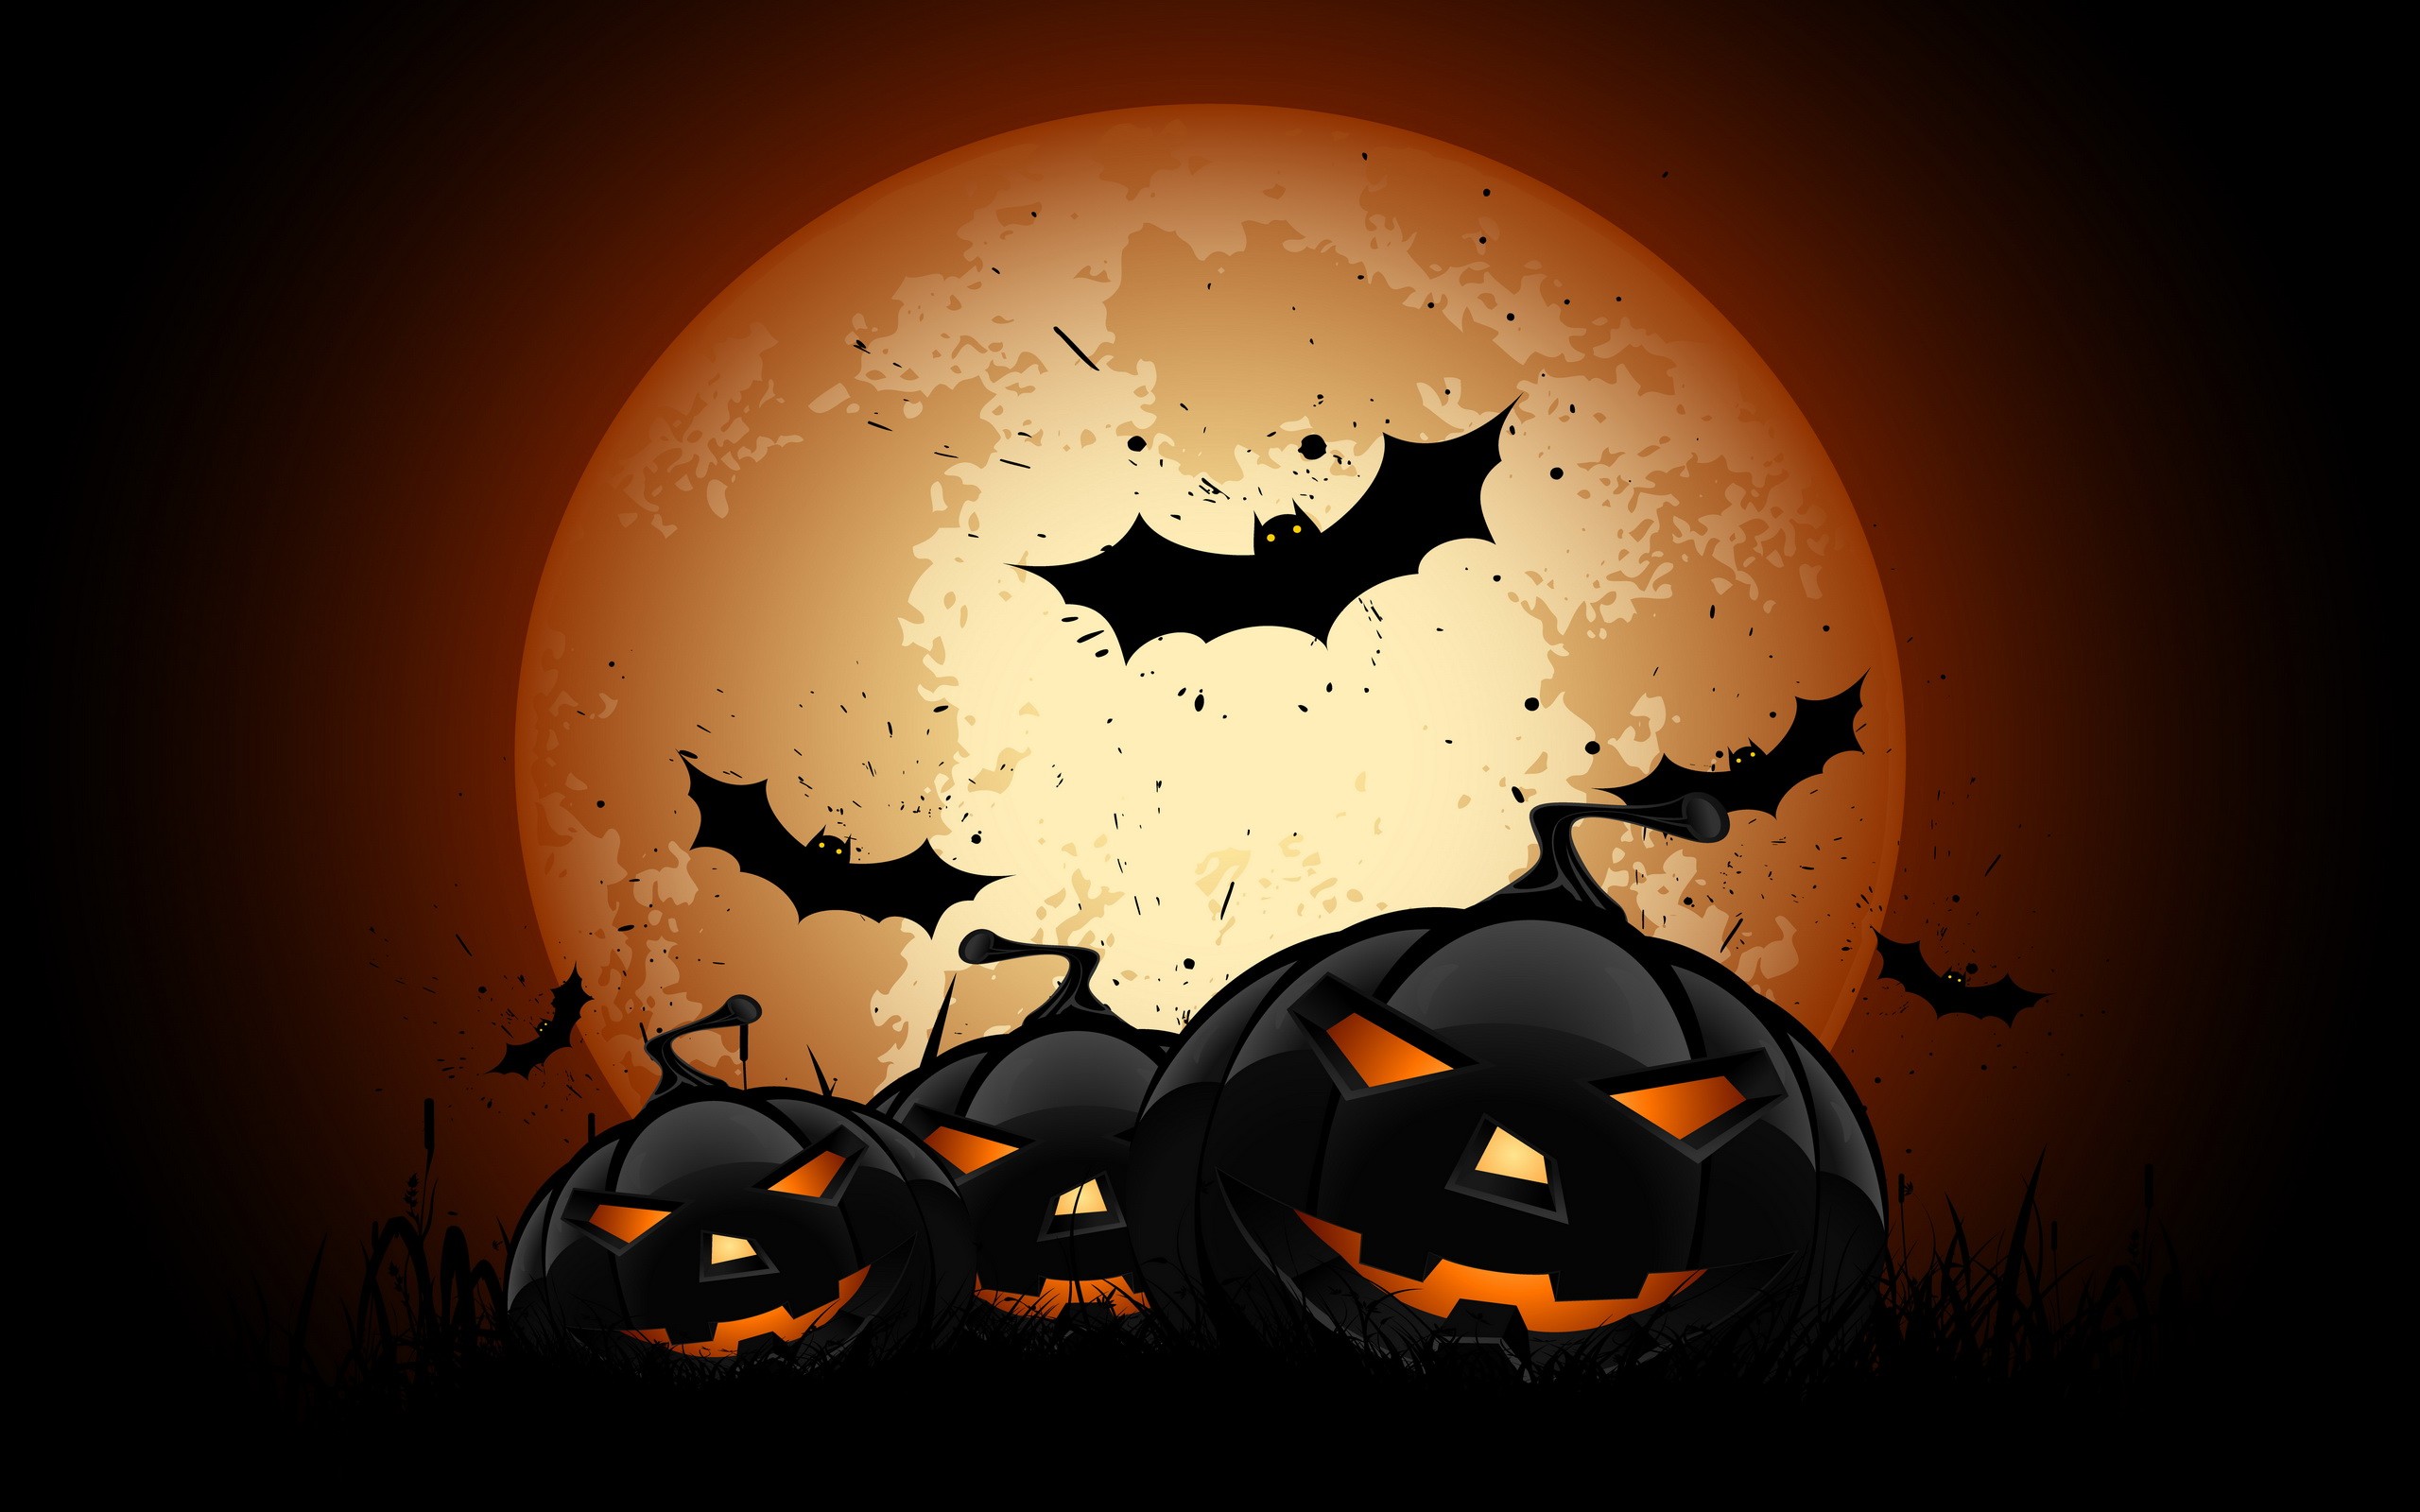 General 2560x1600 Halloween bats pumpkin Moon